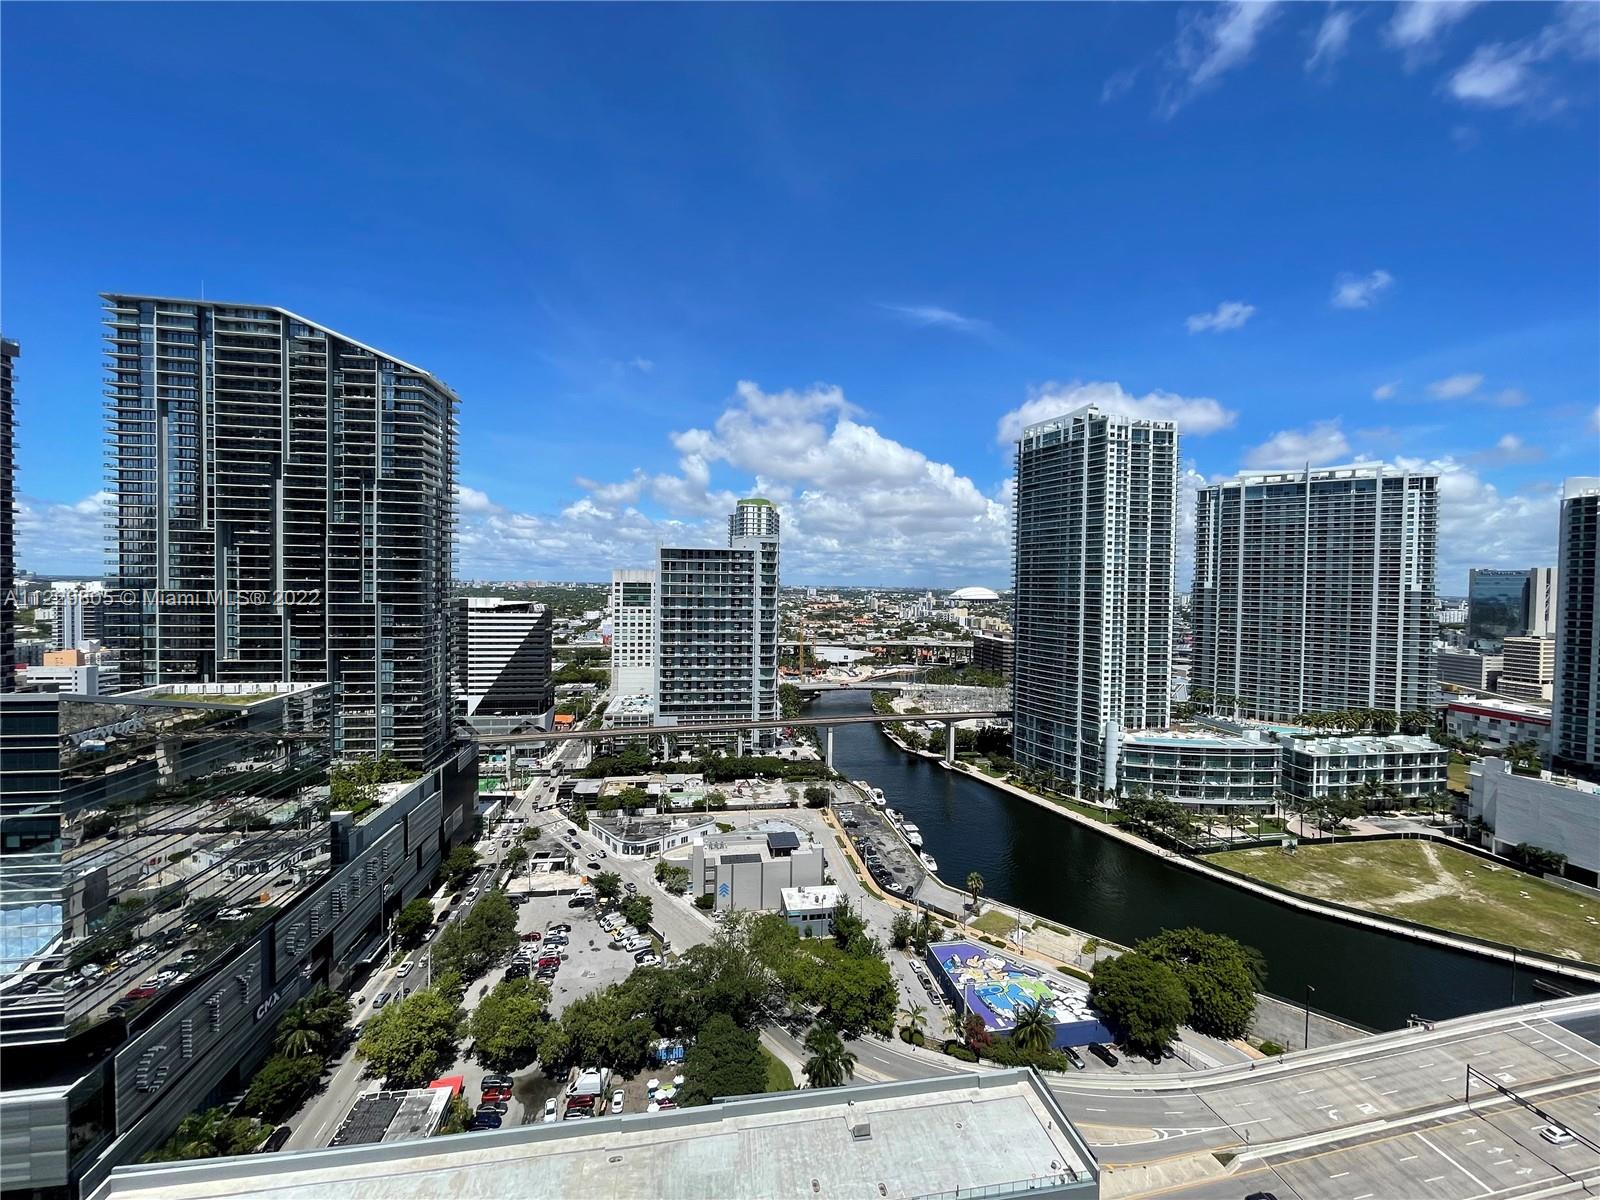 Photo 2 of Brickell City Centre Reach Apt 2408 in Miami - MLS A11229805